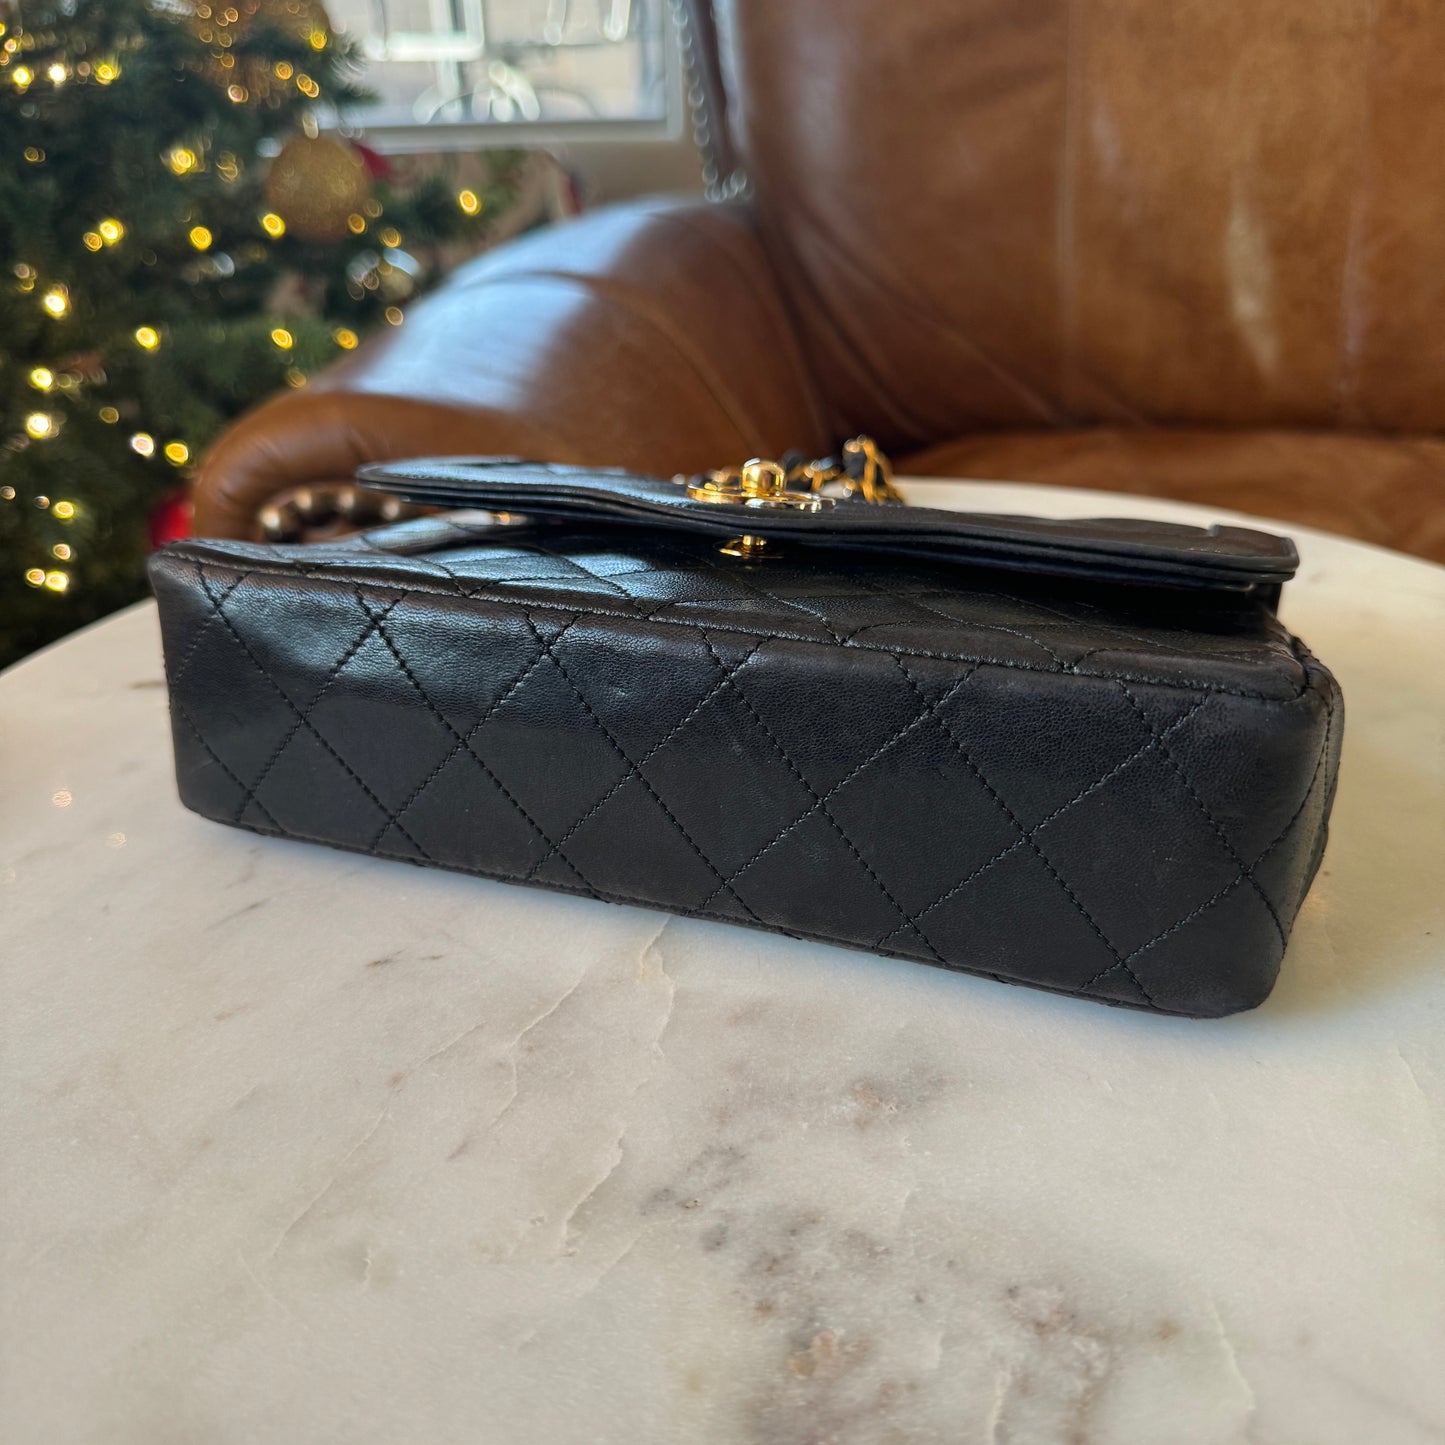 Chanel Vintage Matelasse Double Flap Bag